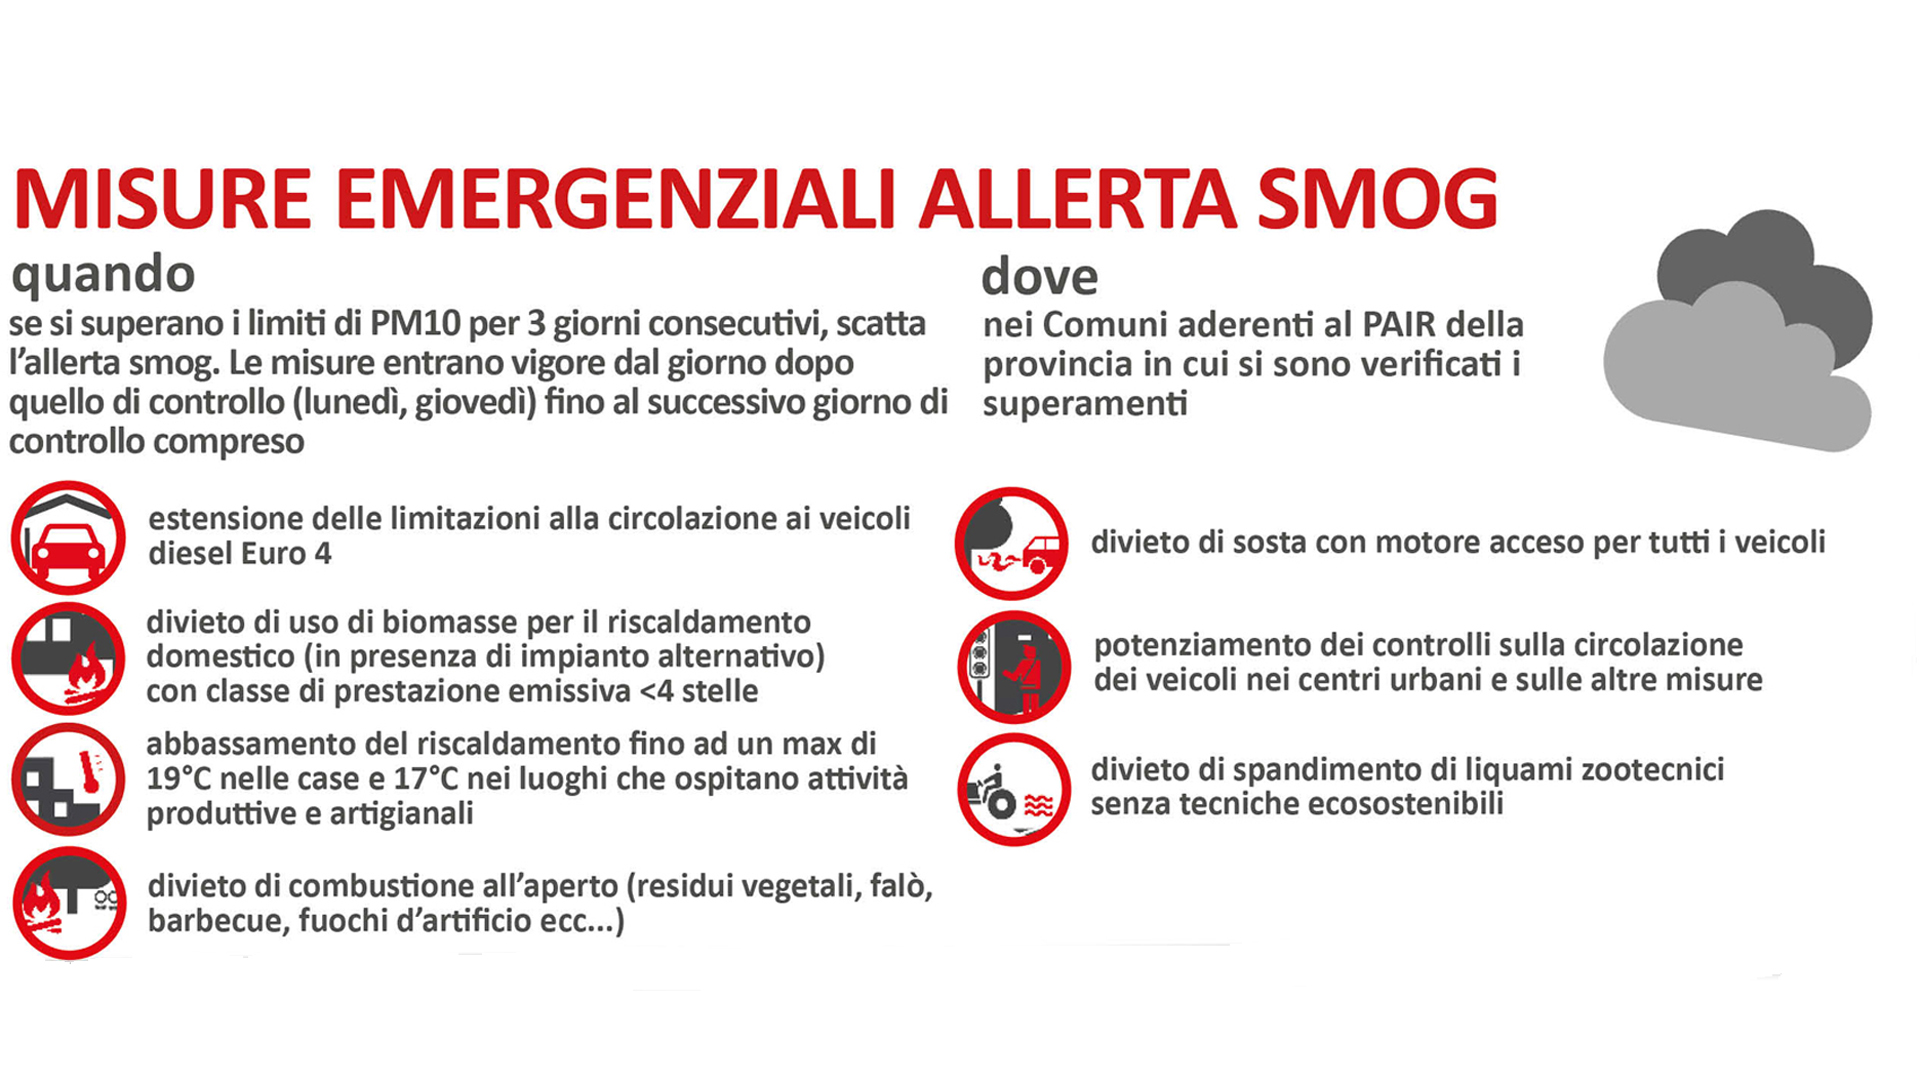 Smog, ancora sforamenti dei limiti di PM10: continuano fino a lunedì 25 febbraio le misure emergenziali a Bologna, Imola e nei Comuni dell'agglomerato